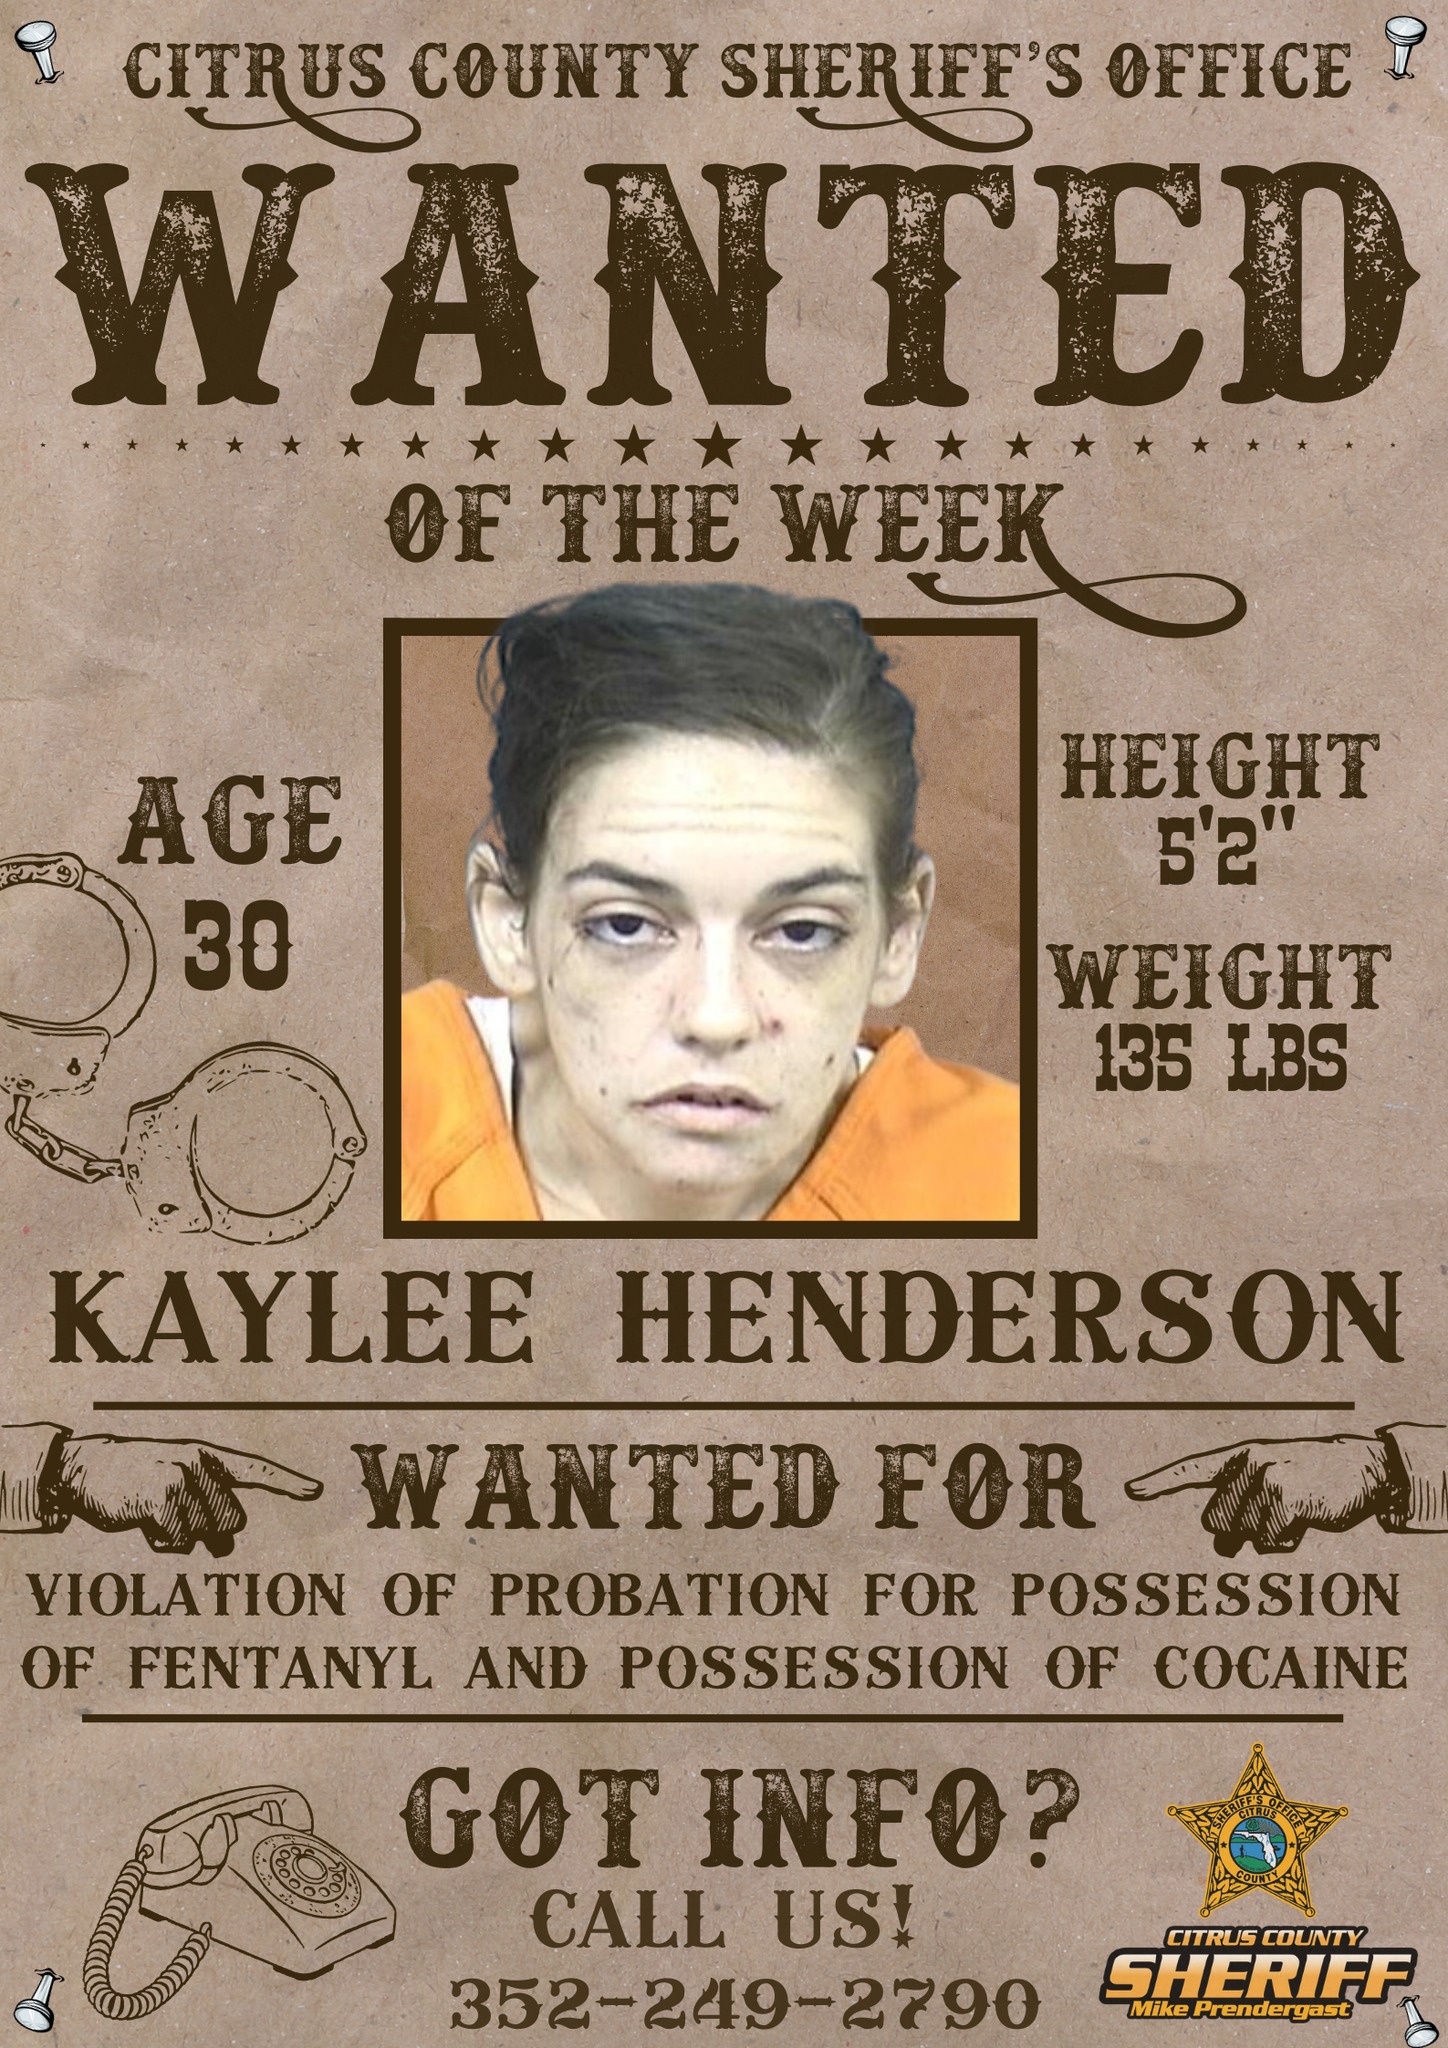 Kaylee Henderson